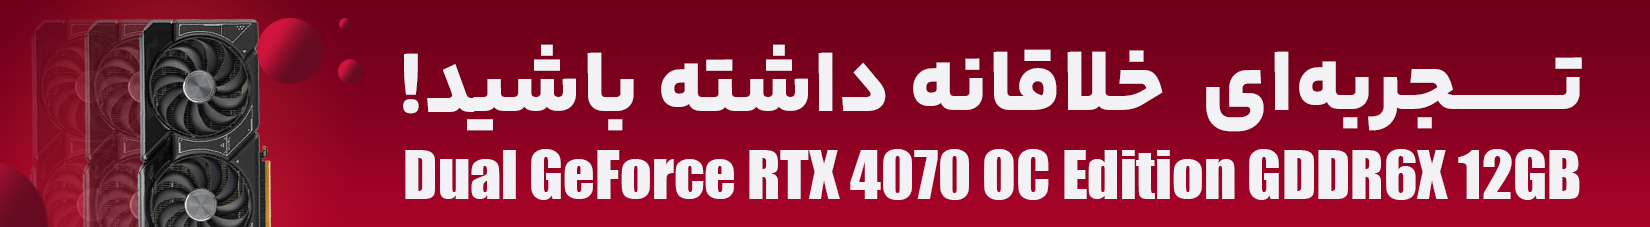 کارت گرافیک ایسوس Dual GeForce RTX 4070 OC Edition GDDR6X 12GB ظرفیت 12 گیگابایت